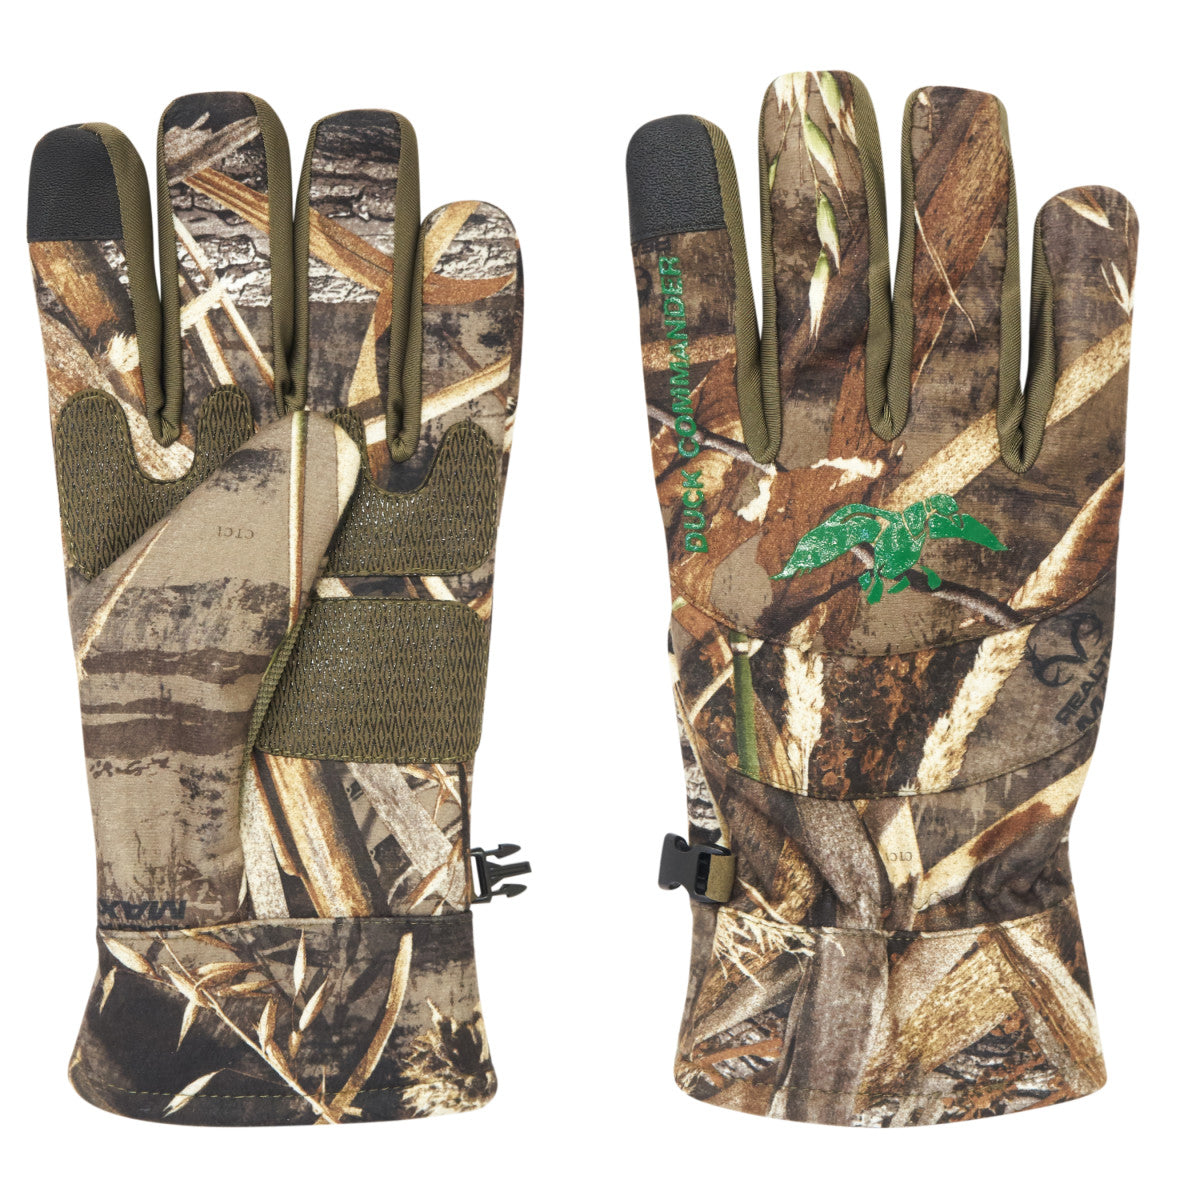 Duck Commander x Hot Shot Men's Hen Camo Hunting Gloves, Medium, Realtree Max 5